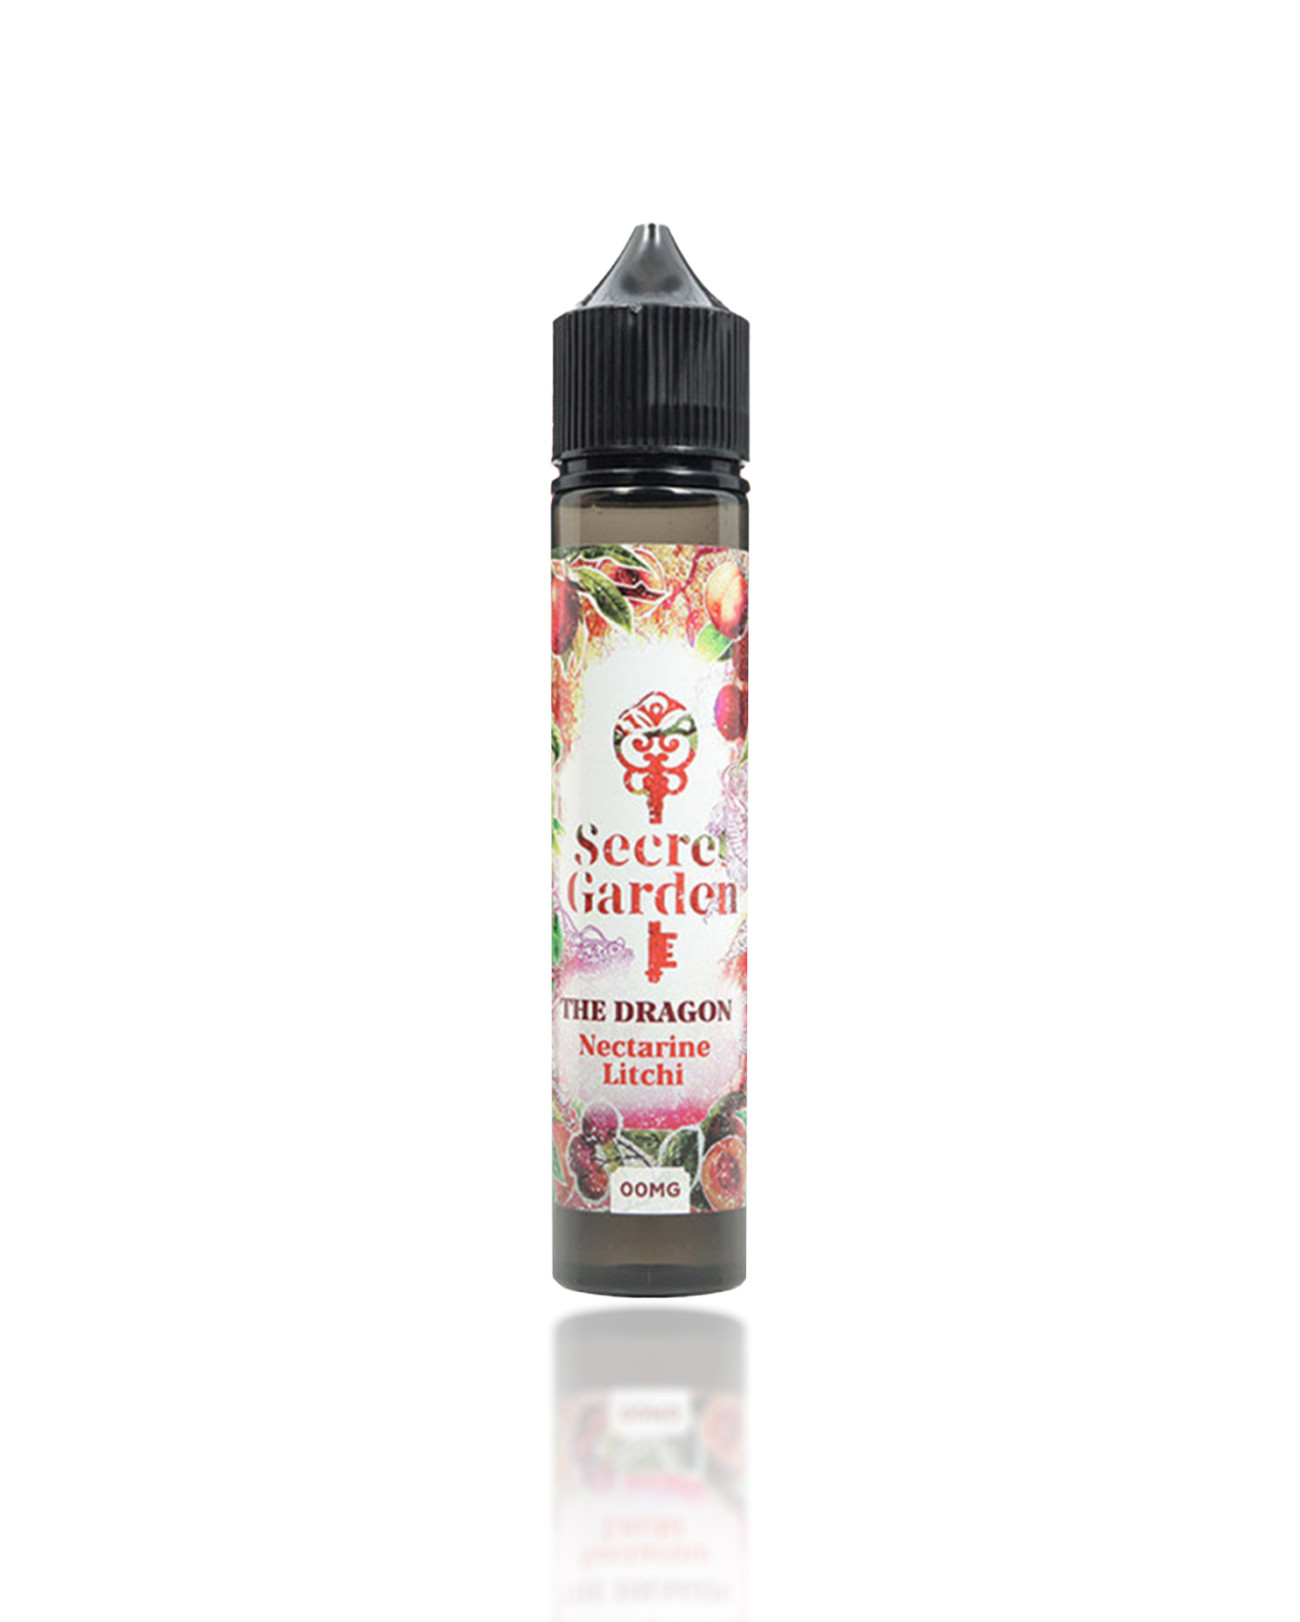 E-liquide 50 ml pour cigarette électronique Secret Garden The Dragon parfum frais nectarine et litchi